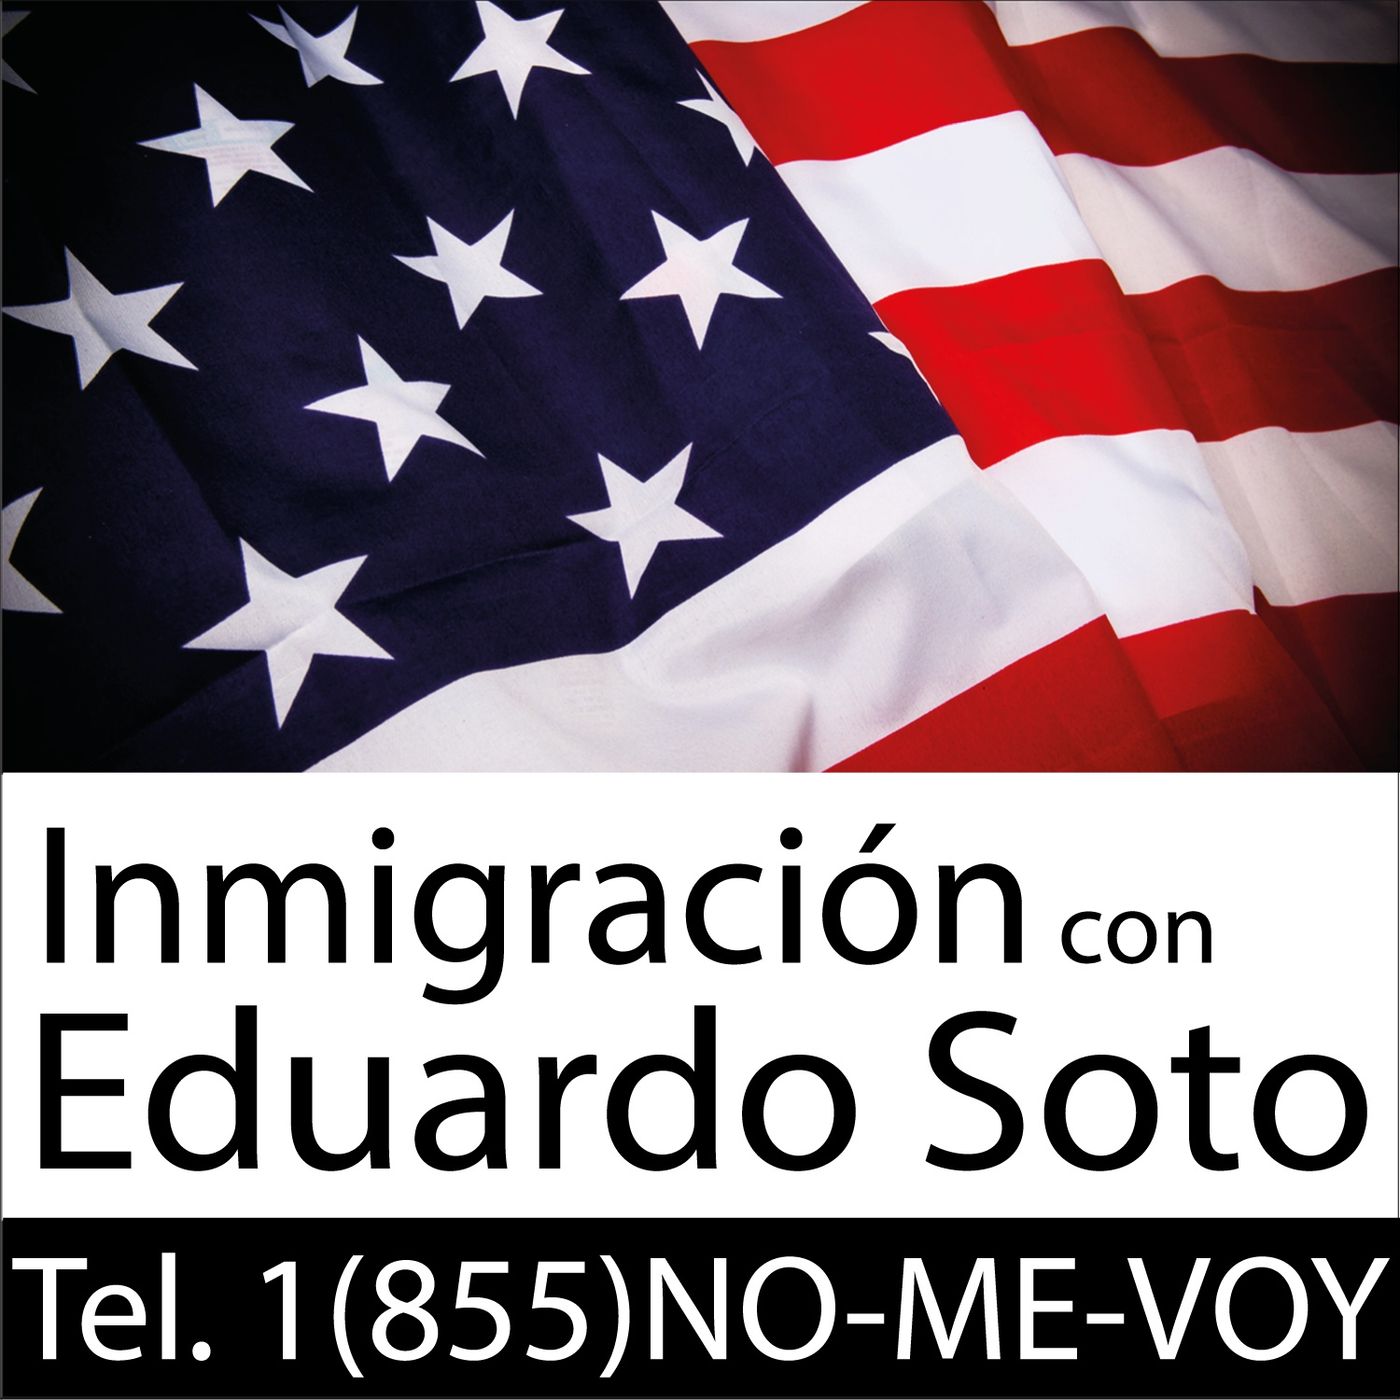 Inmigración con Eduardo Soto